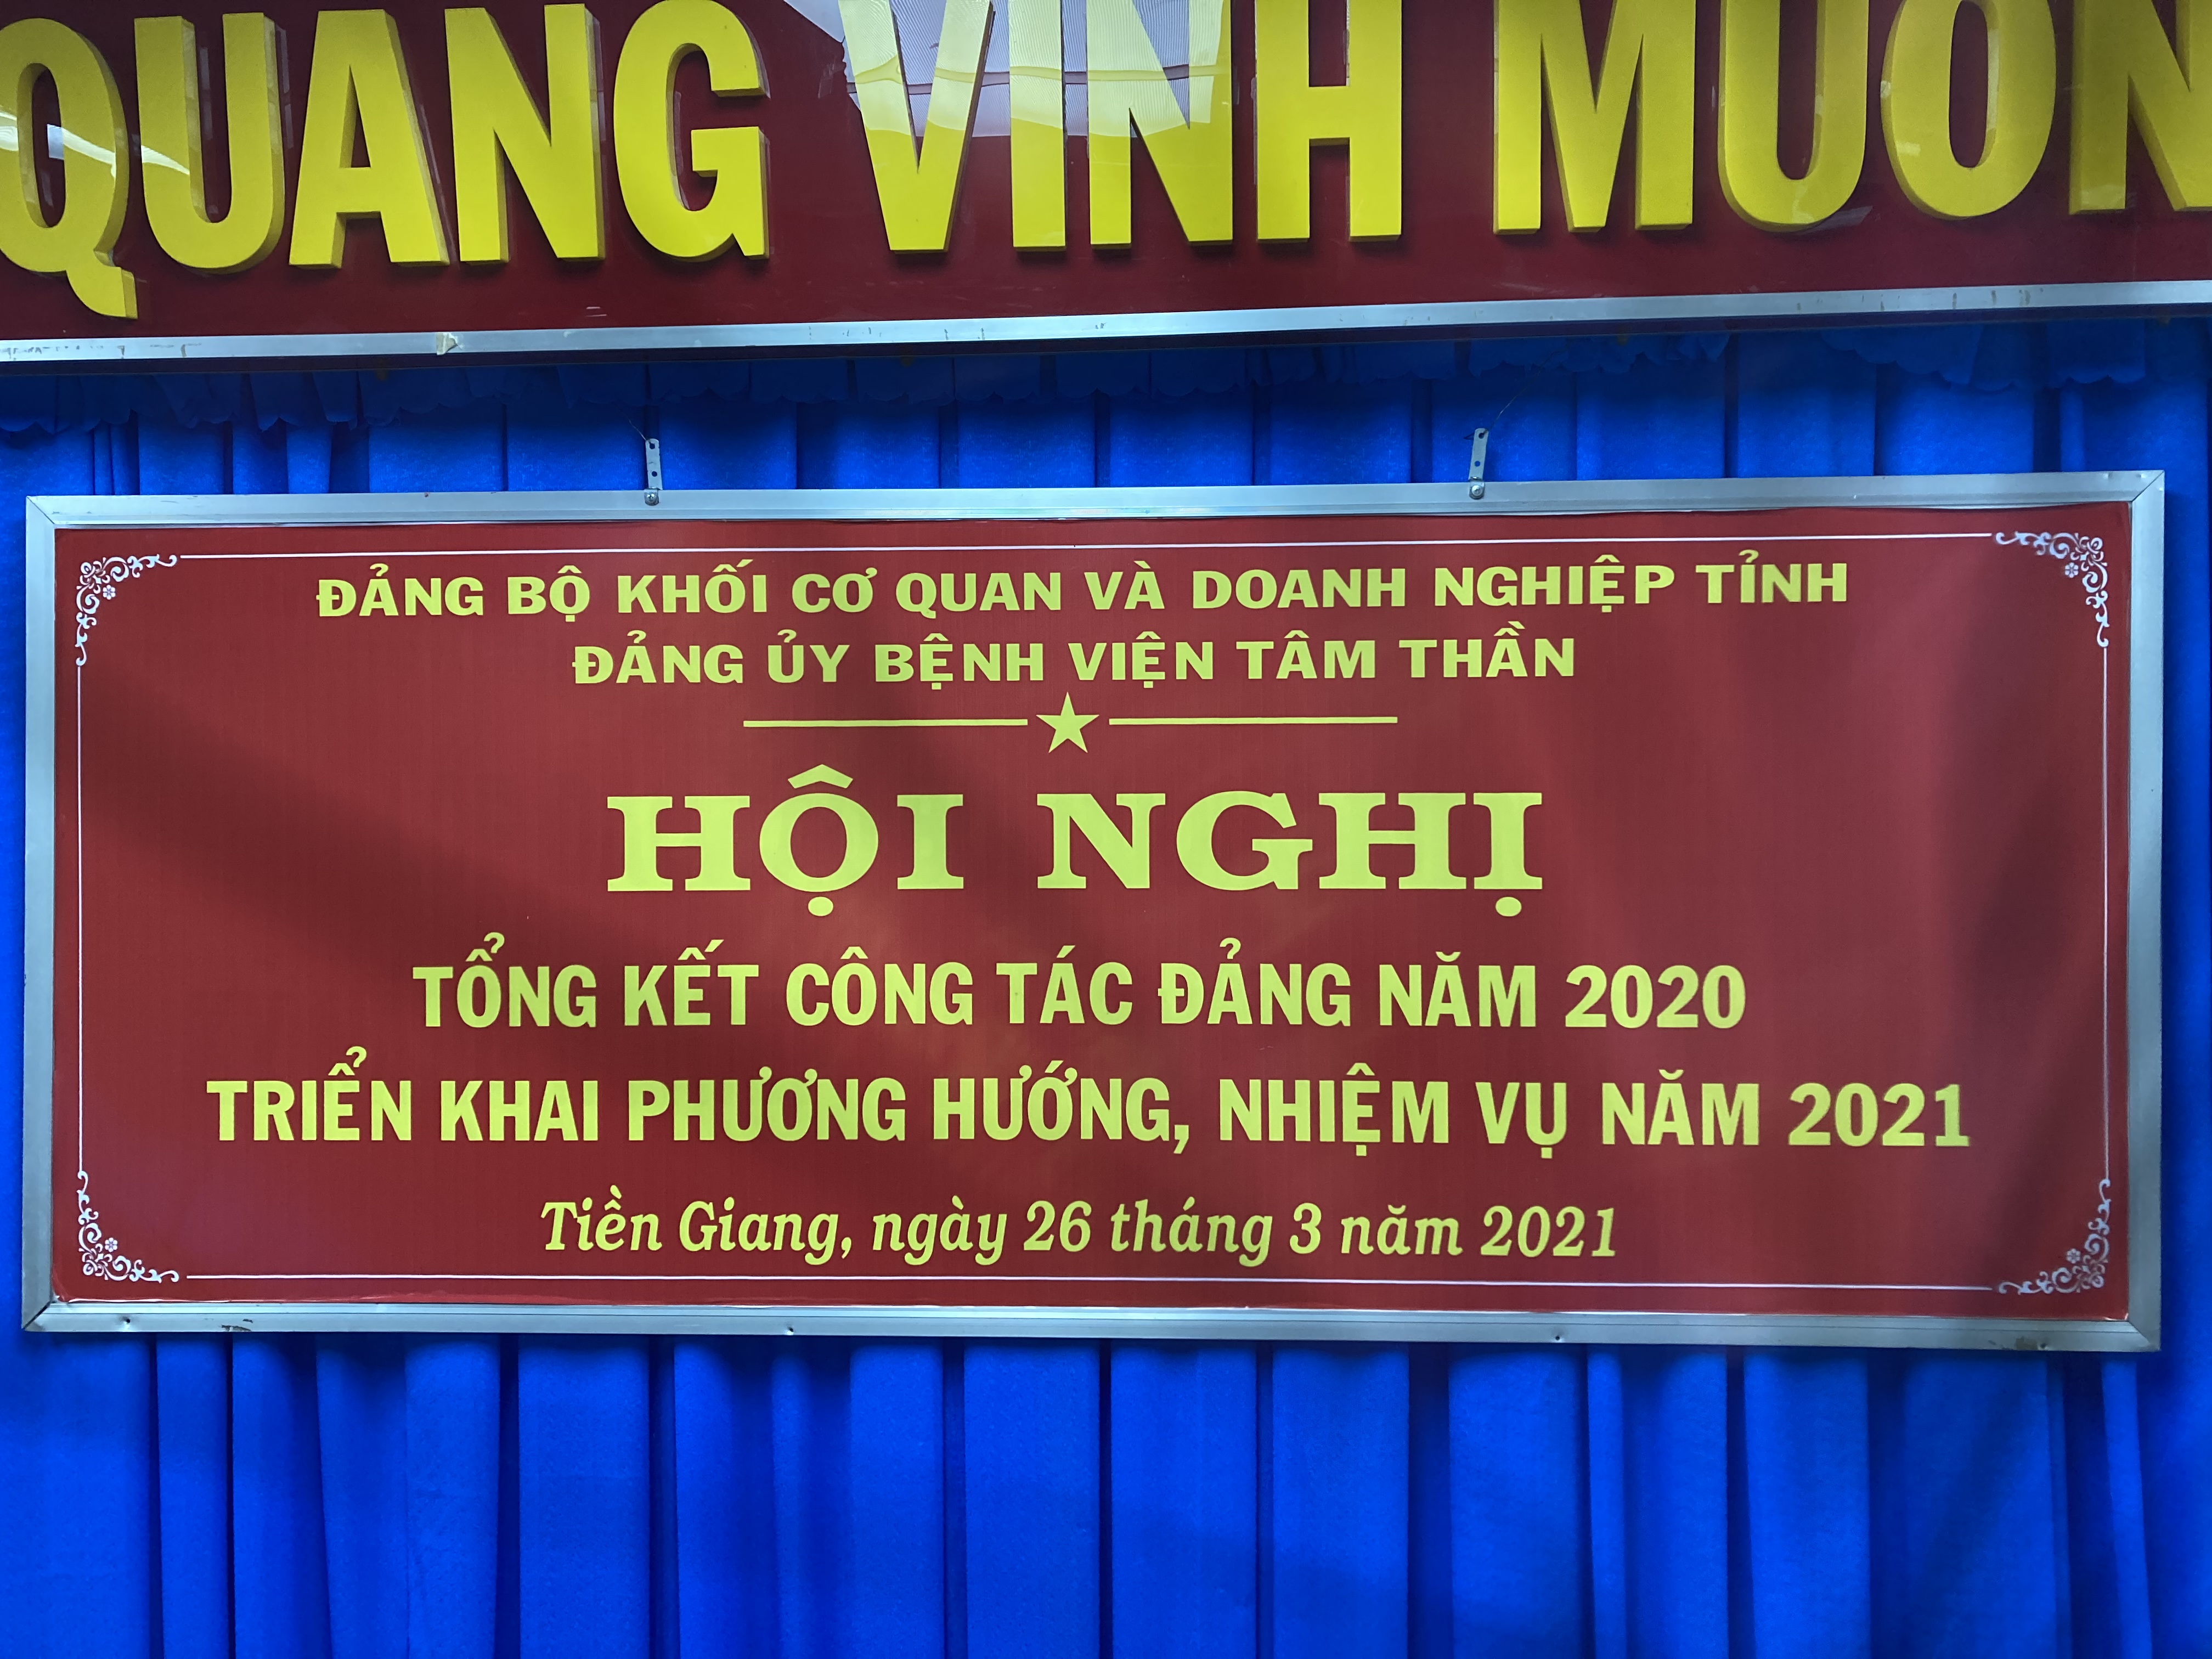 Đảng bộ Bệnh viện Tâm thần Tiền Giang tổ chức tổng kết công tác Đảng năm 2020, triển khai phương hướng nhiệm vụ năm 2021.